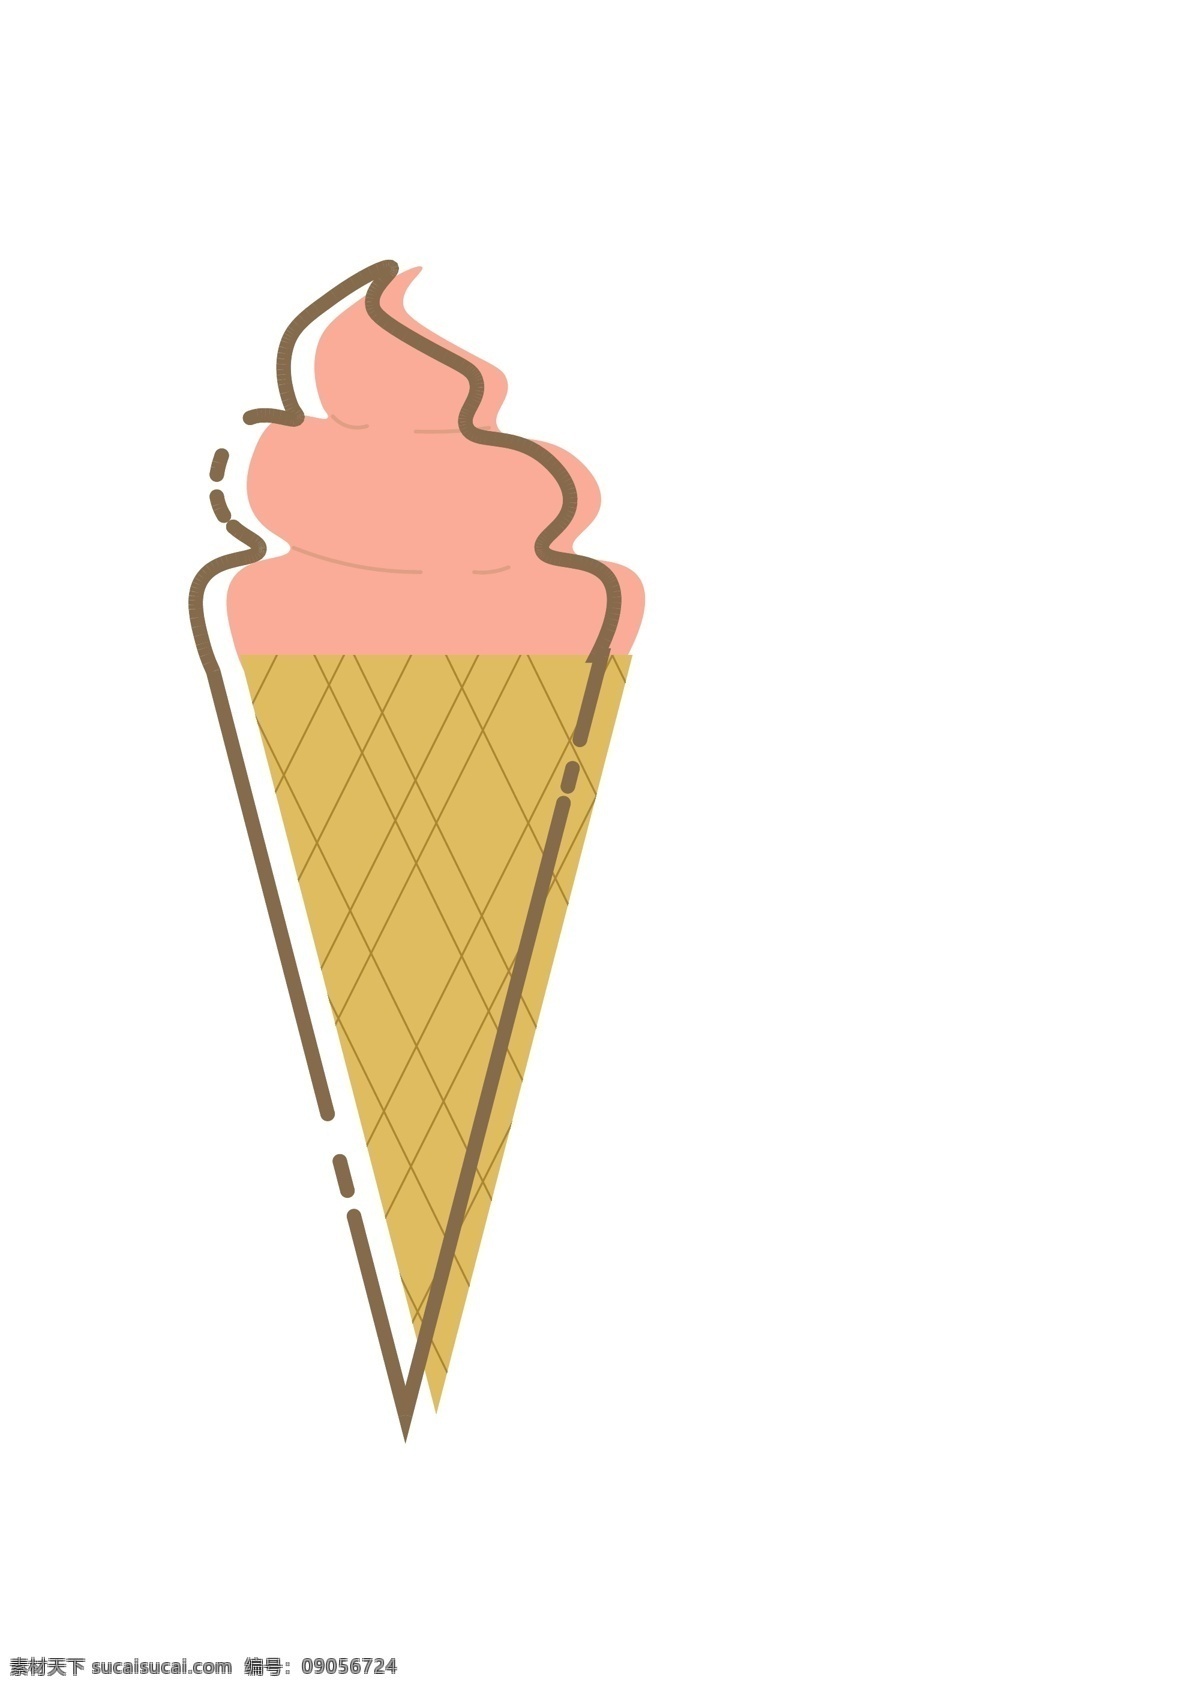 冰淇淋 冰棍 冰棒 mbe 可爱 卡通 简约 夏天 图标 甜筒